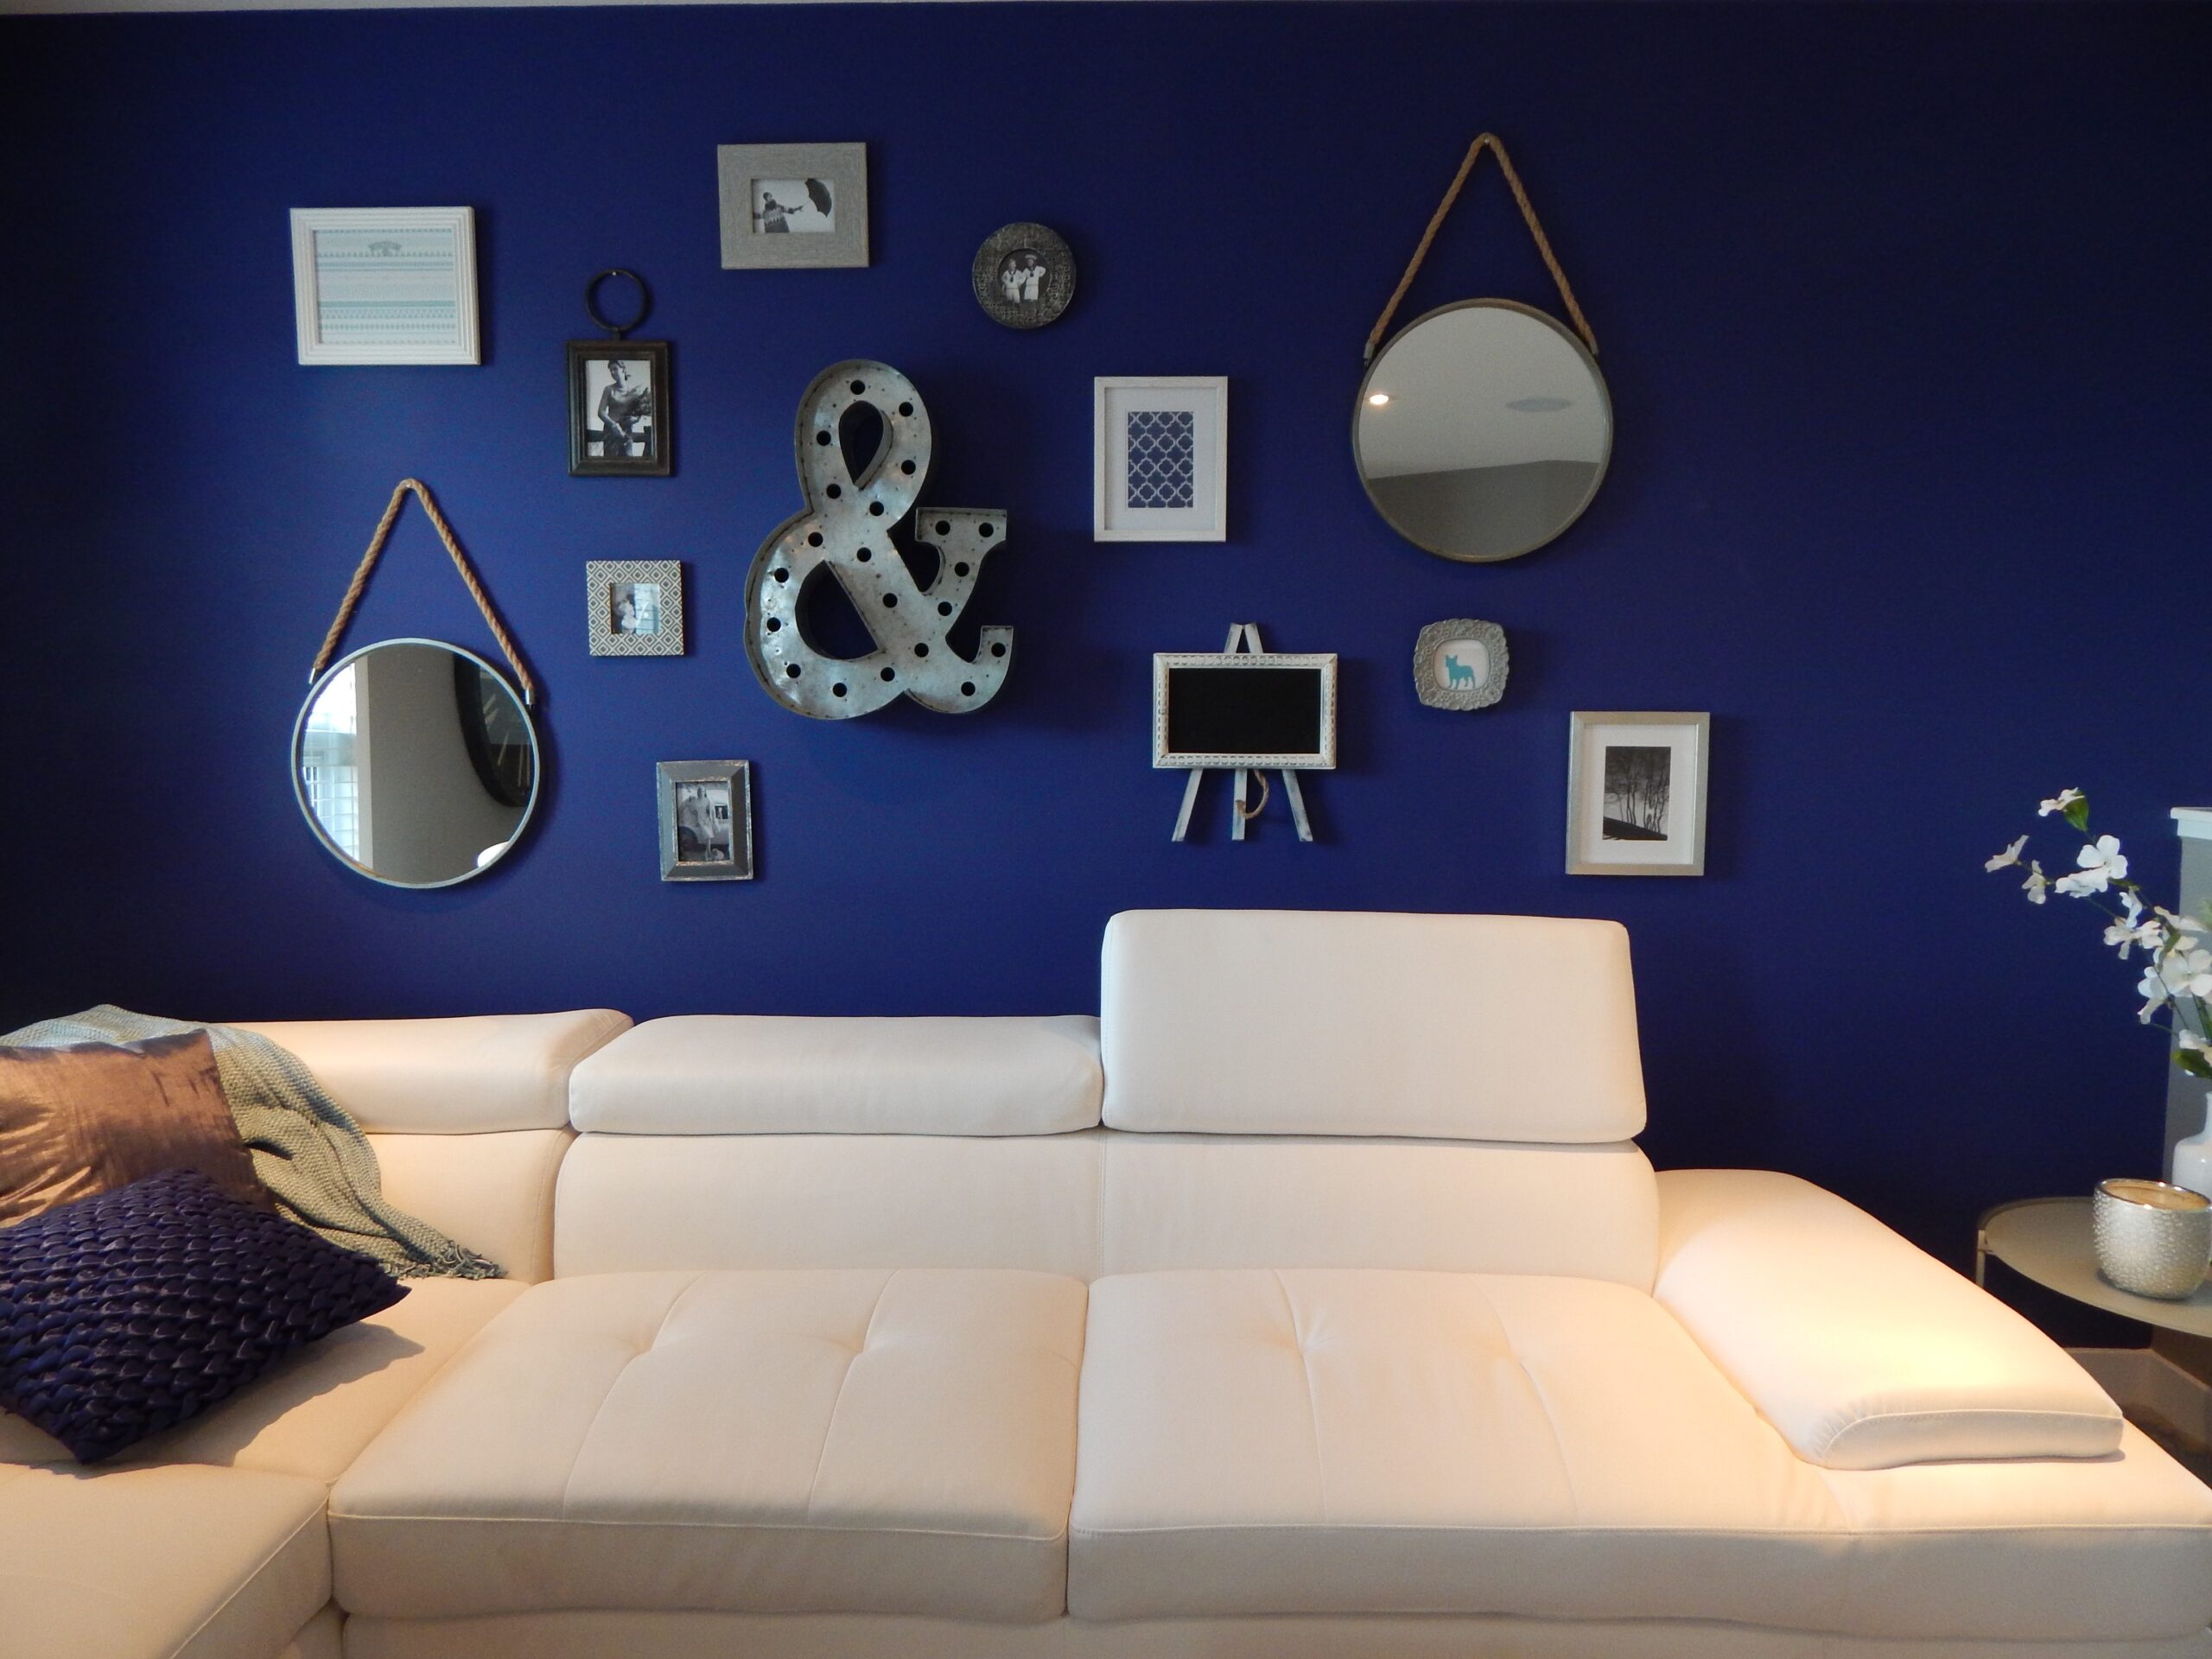 Sofá branco e parede azul com quadros, espelhos e itens de decoração. Imagem ilustrativa texto